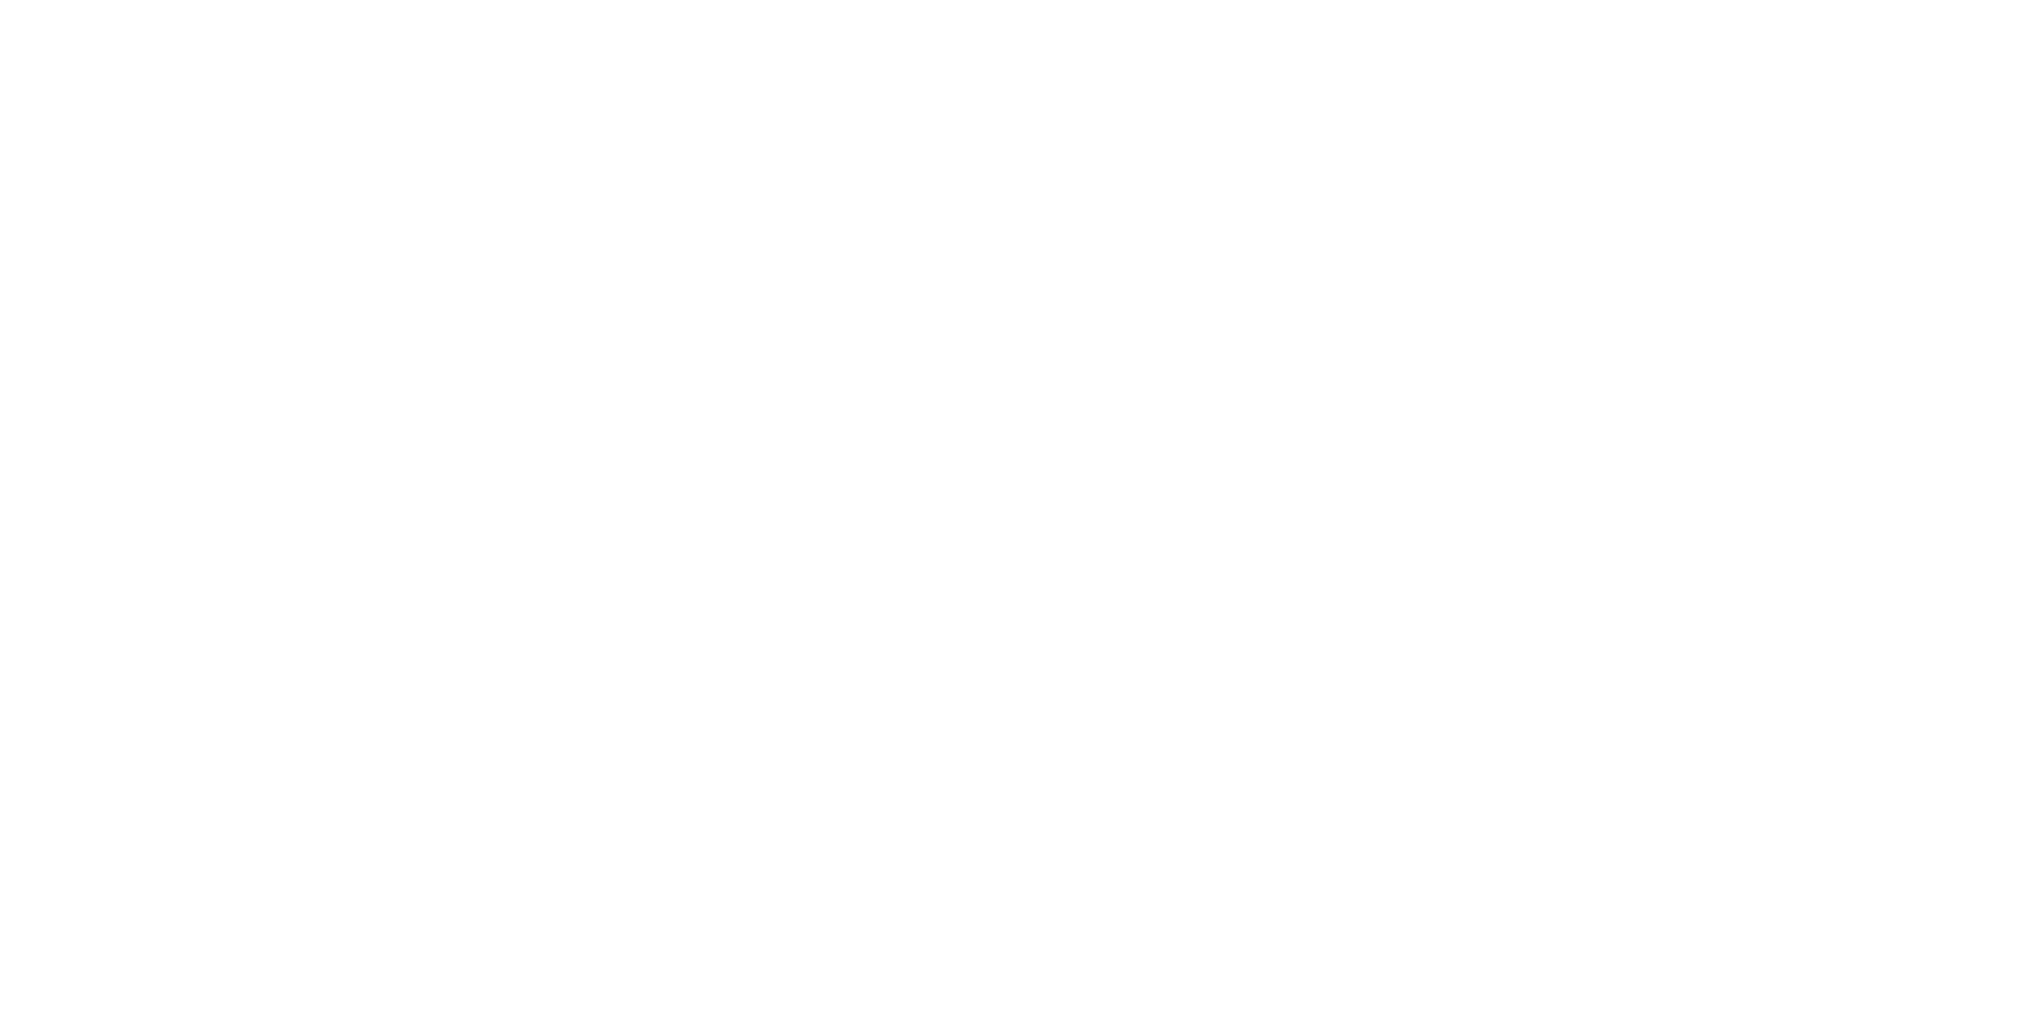 Lund Municipality